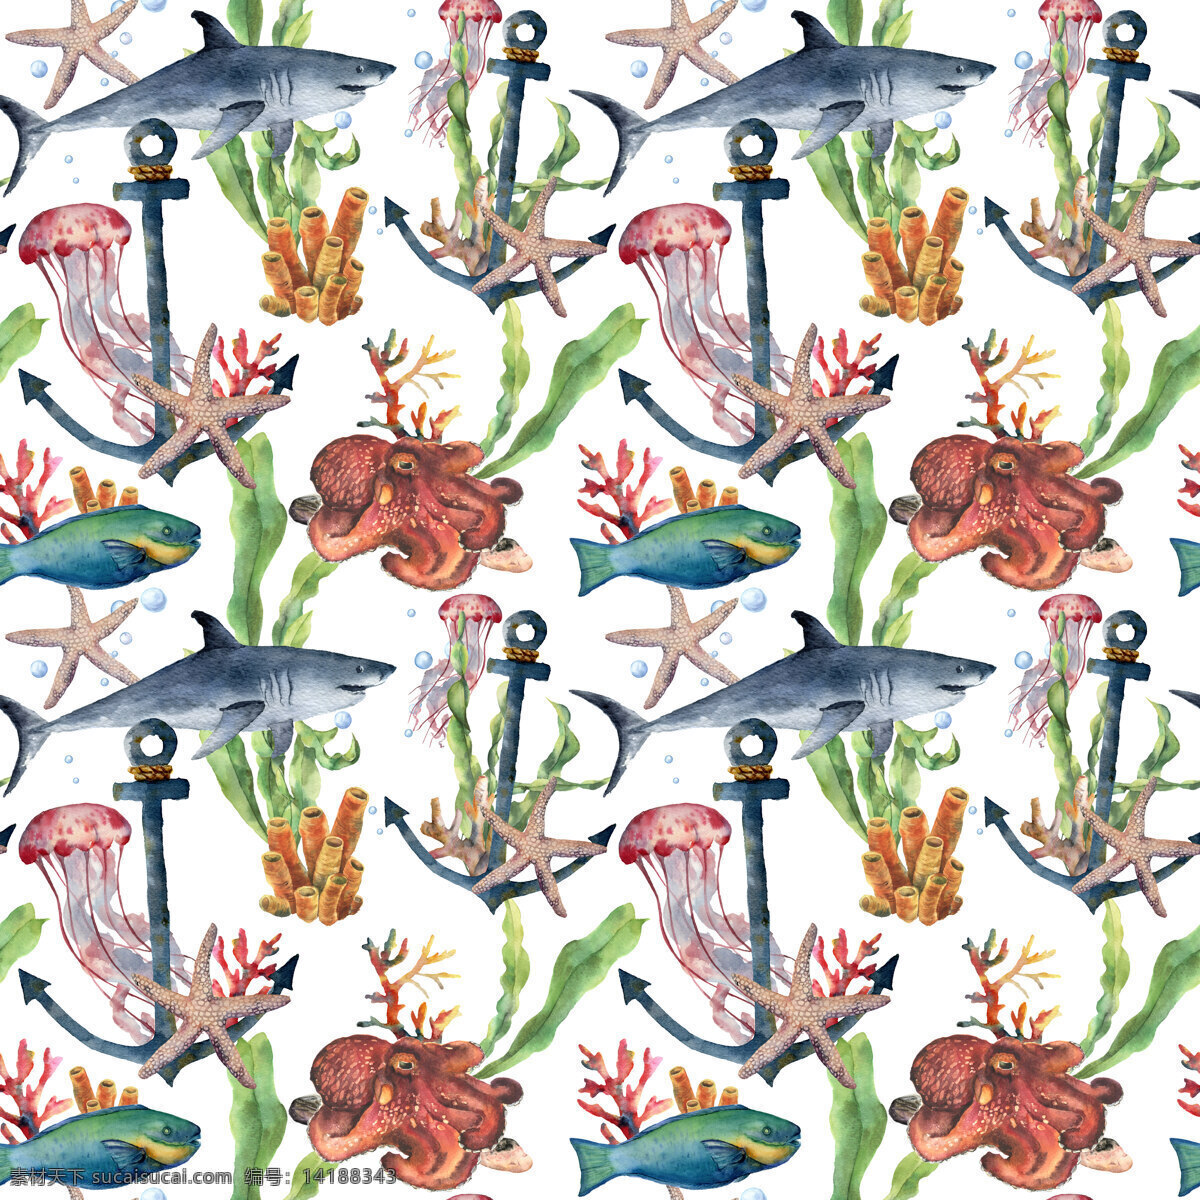 海洋 主题 插画 图案 海螺贝类 海洋生物 热带鱼群 水彩插画 海底世界 海洋生物插画 鱼群插画 装饰图案 水草植物插画